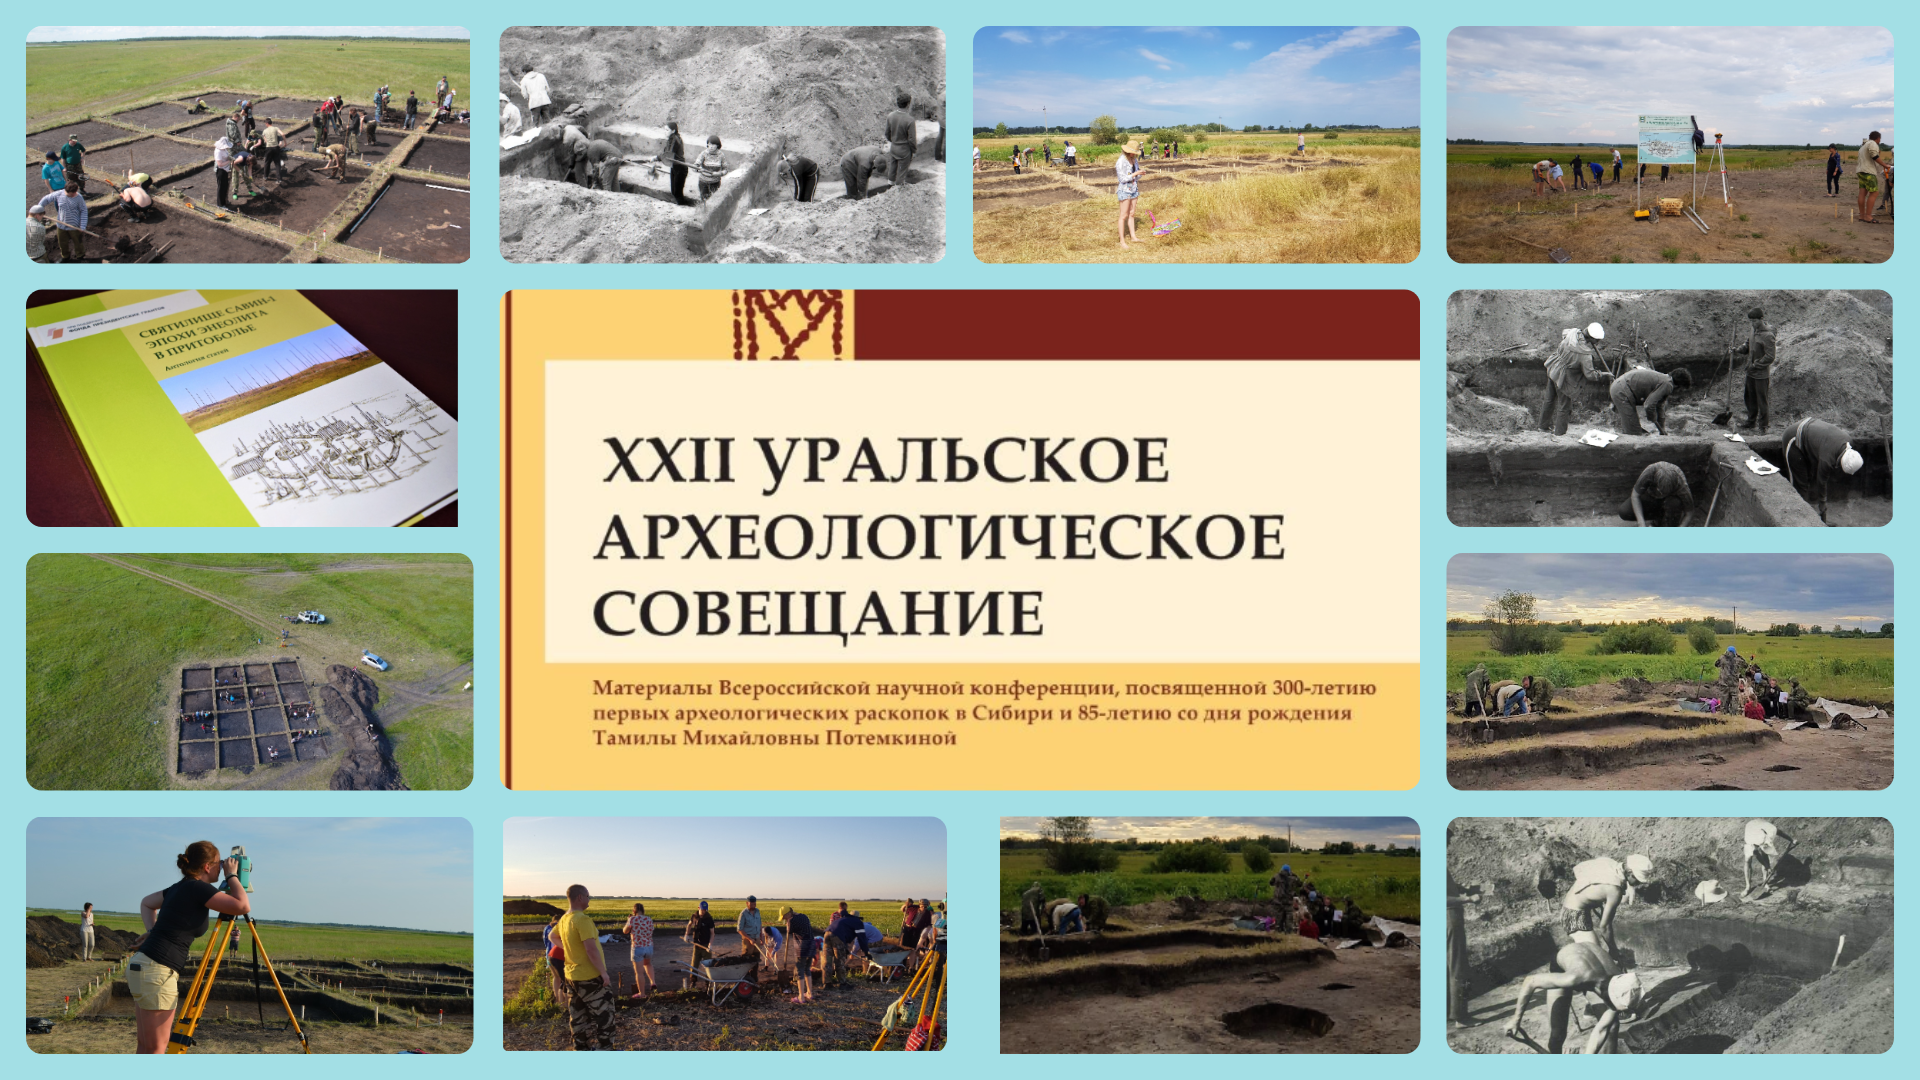 В КГУ пройдет XXII Уральское археологическое совещание